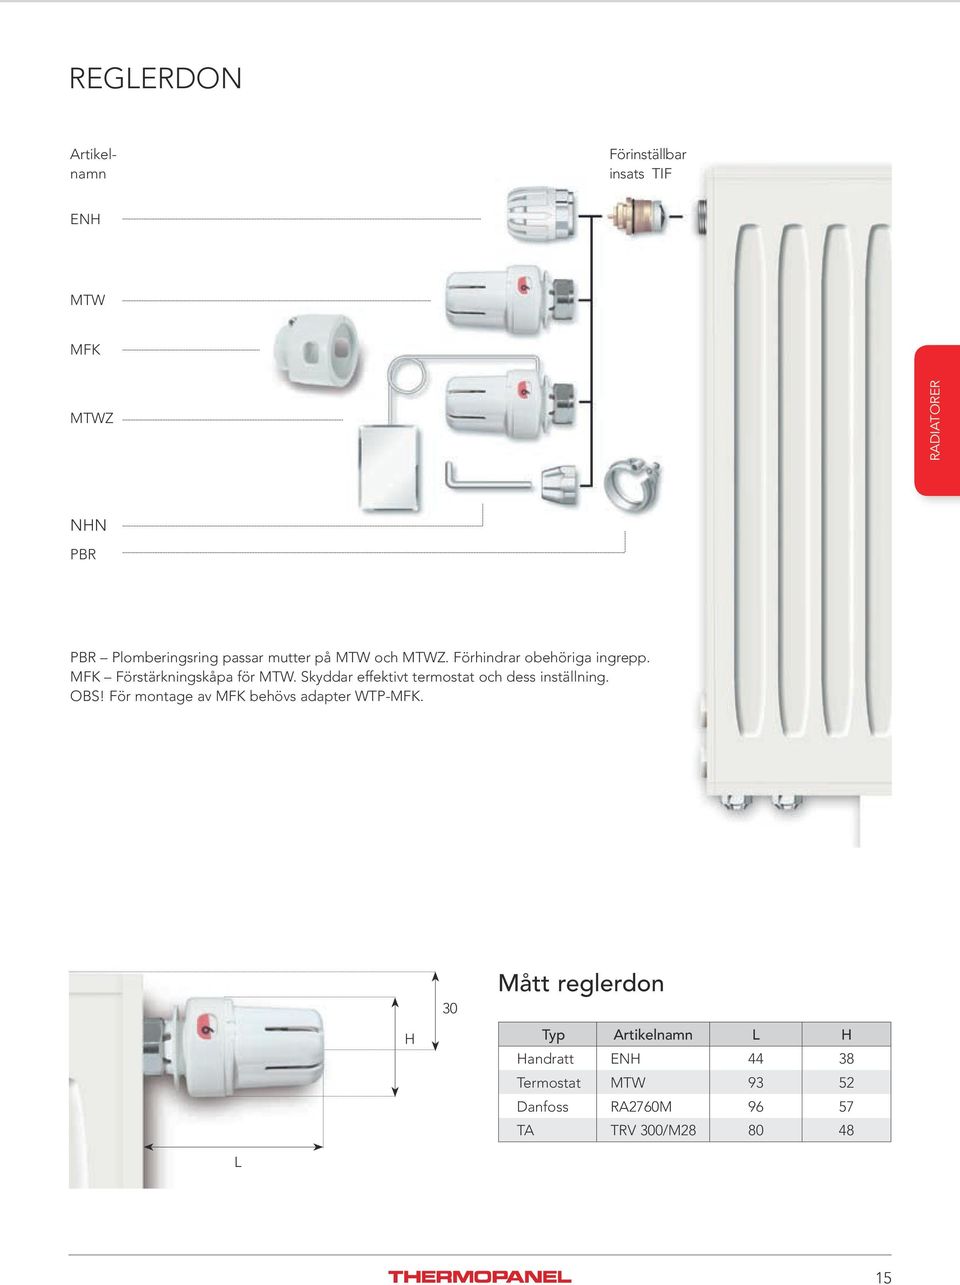 Skyddar effektivt termostat och dess inställning. OBS! För montage av MFK behövs adapter WTP-MFK.